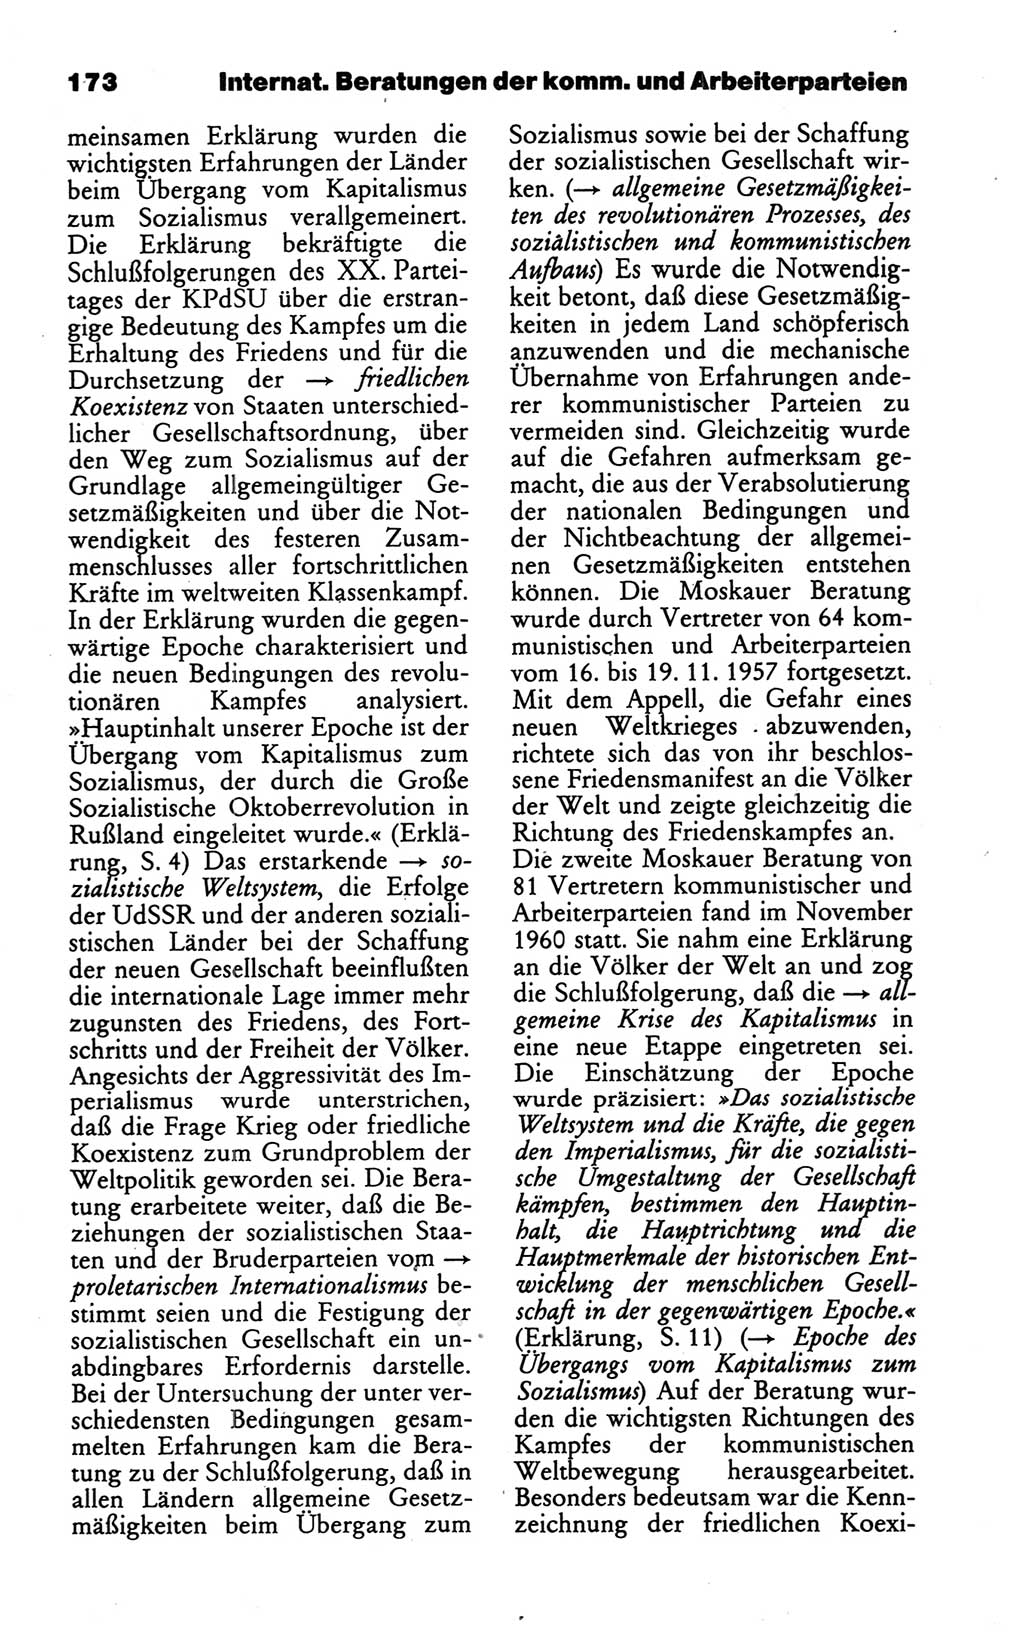 Wörterbuch des wissenschaftlichen Kommunismus [Deutsche Demokratische Republik (DDR)] 1986, Seite 173 (Wb. wiss. Komm. DDR 1986, S. 173)